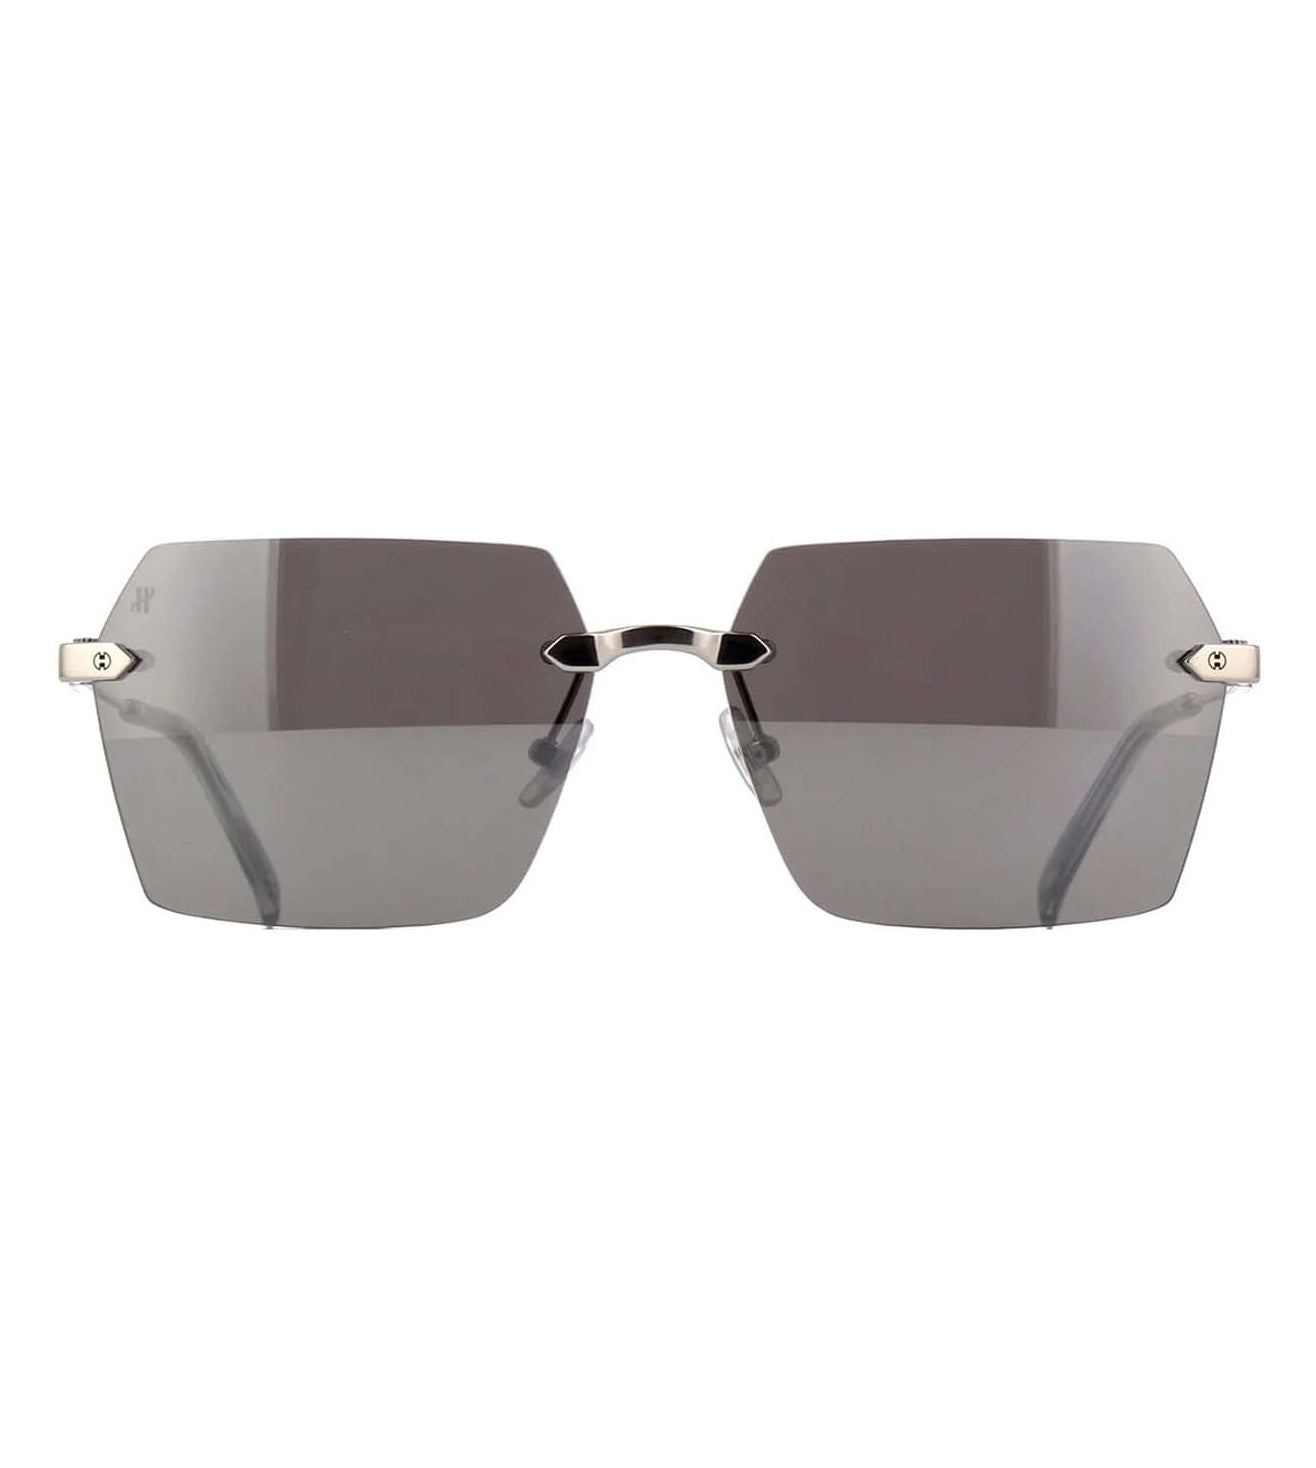 Chrome Square Sunglasses